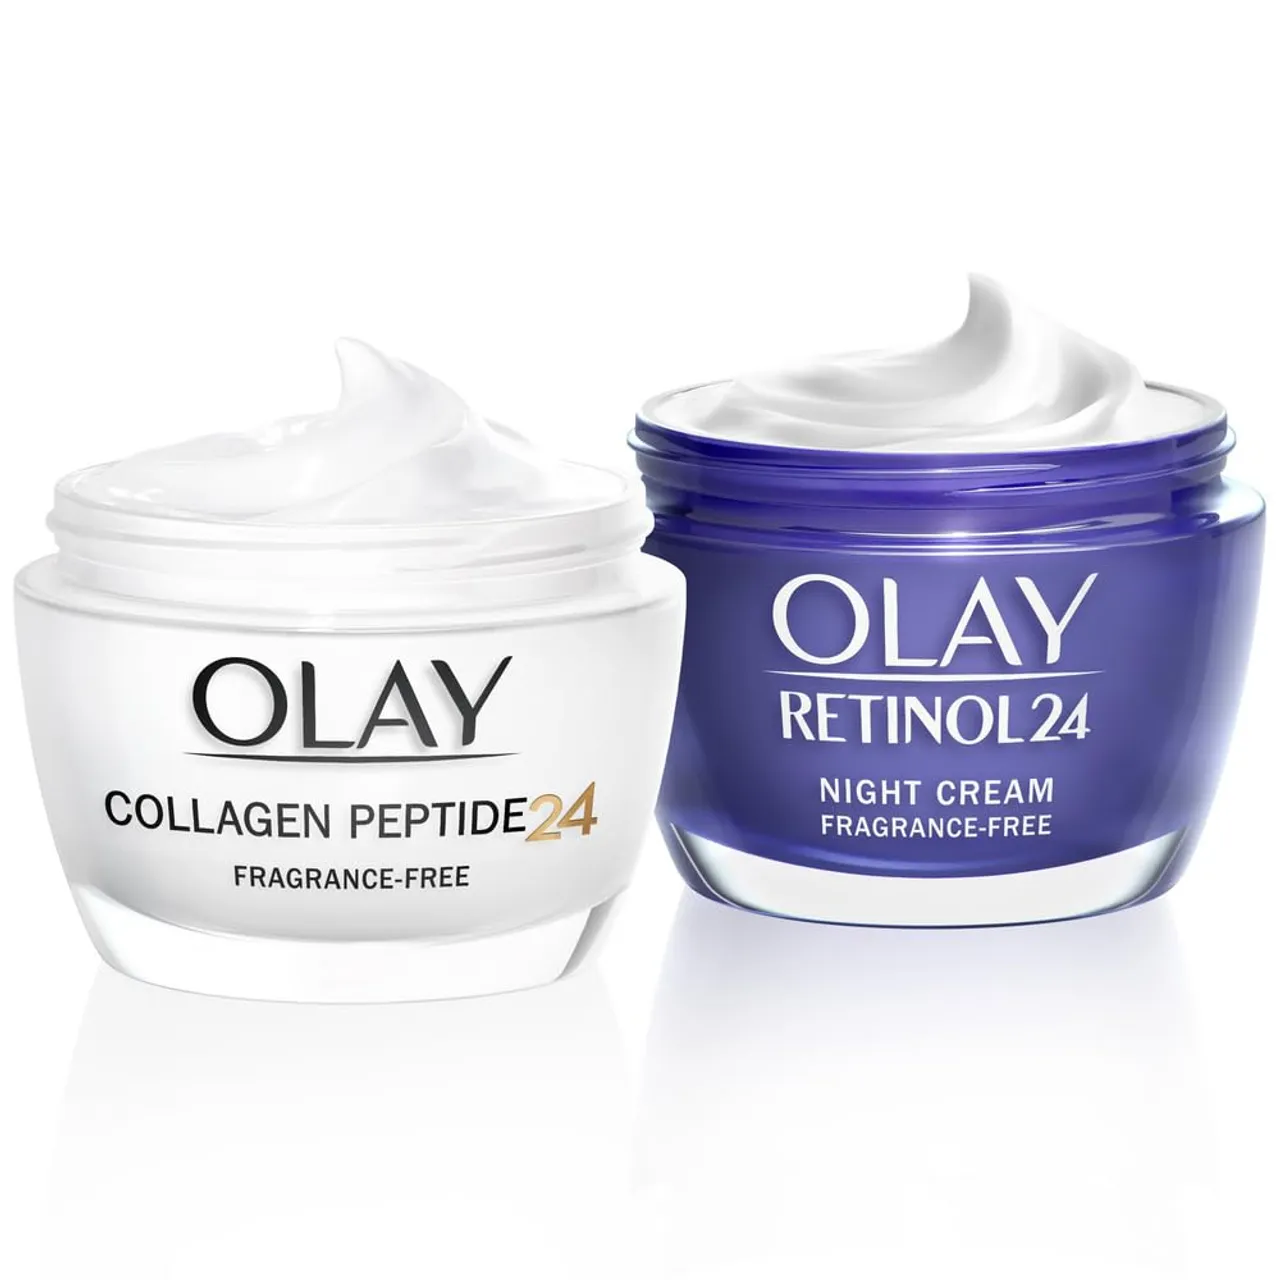 Olay Moisturiser Skin Care Sets & Kits